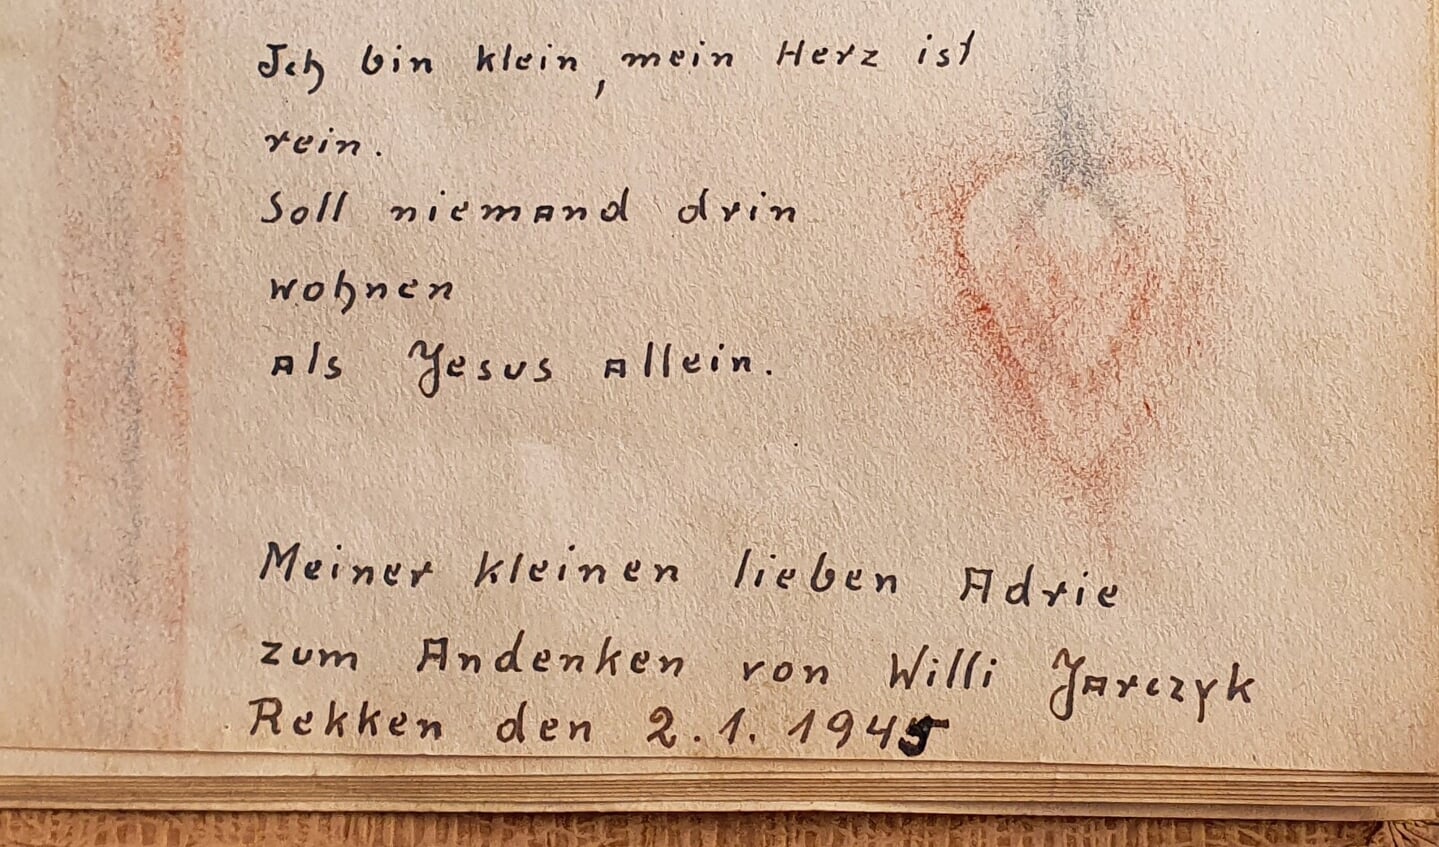 Versje in het poëziealbum van Adri Rietman, geschreven door de Poolse soldaat in 1945. Foto: Rob Weeber